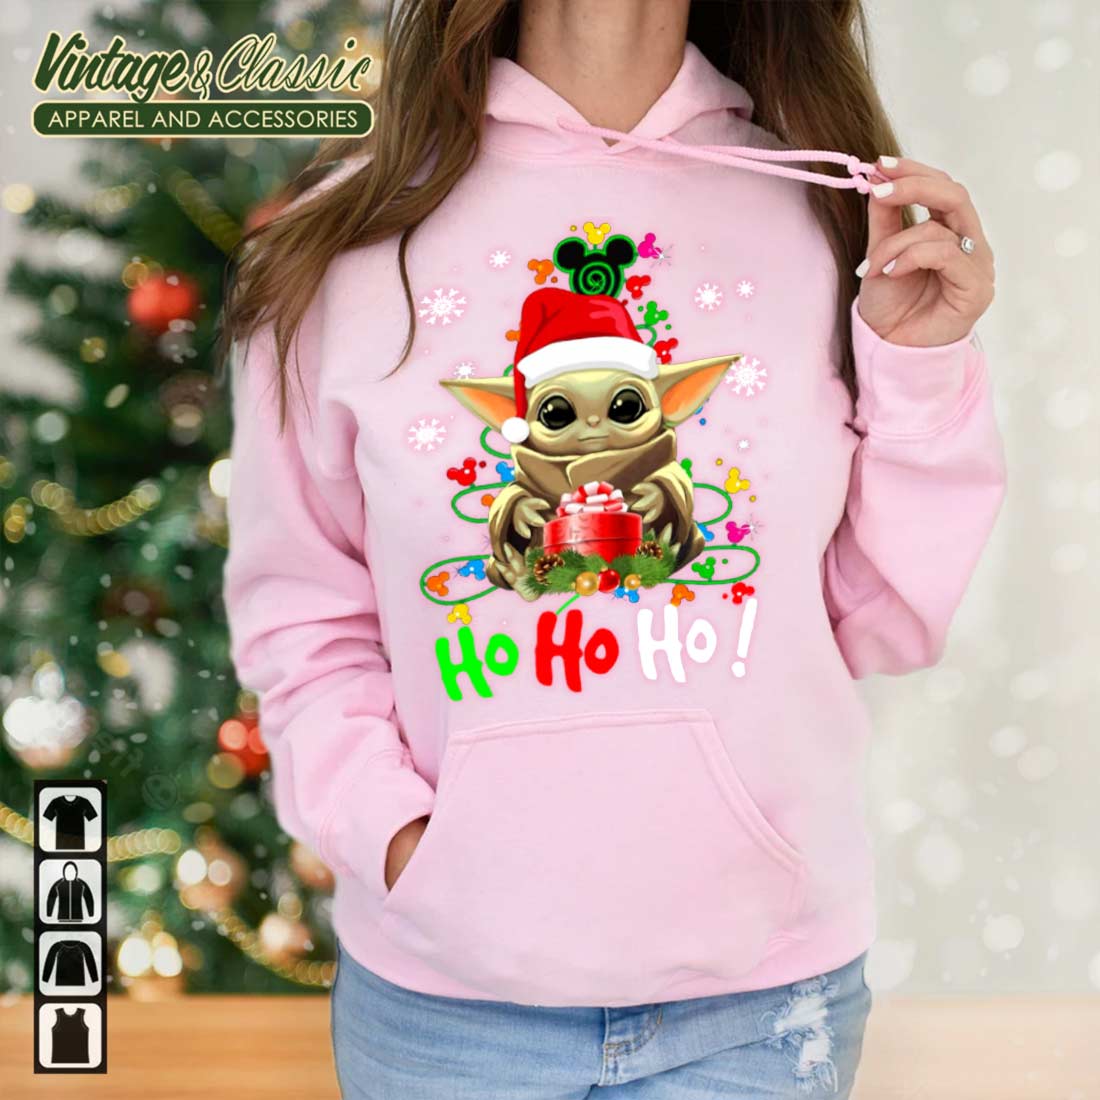 Santa Star Wars Houston Astros Merry Christmas Sweatshirt, hoodie